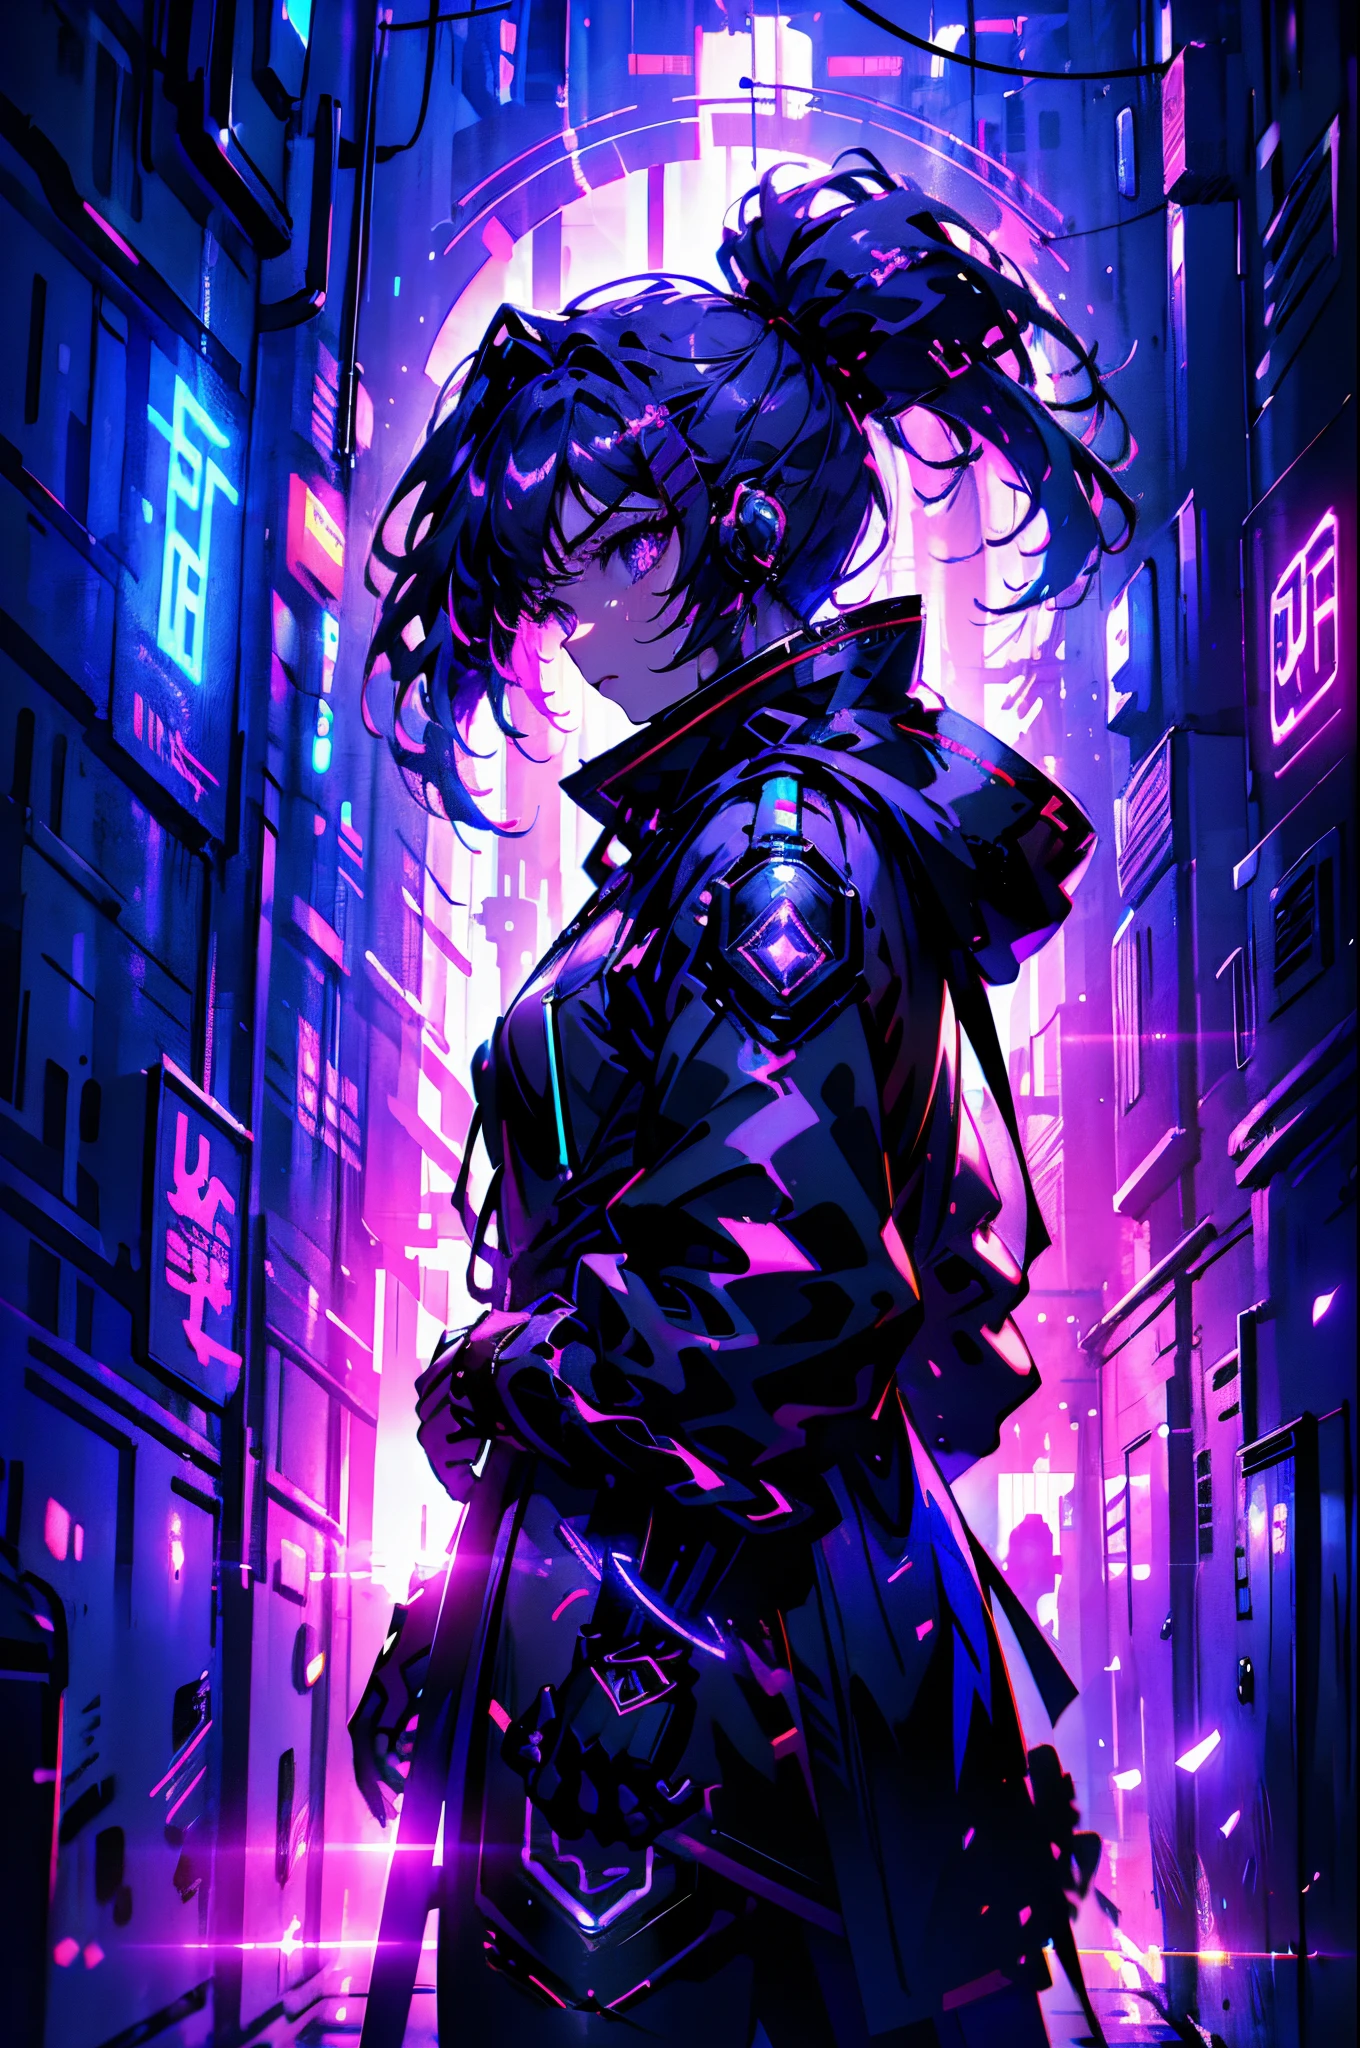 Na cidade Cyberpunk, um garotinho em pé em ângulo com um holo sobre a cabeça , seu vestido pode refletir luzes ao redor, Retrato lateral,meio corpo, na multidão olhando diretamente, Iluminação da cidade cyber punk em segundo plano, 3d anime, niji anime. alta qualidade, 8K ultra-HD , alta resolução